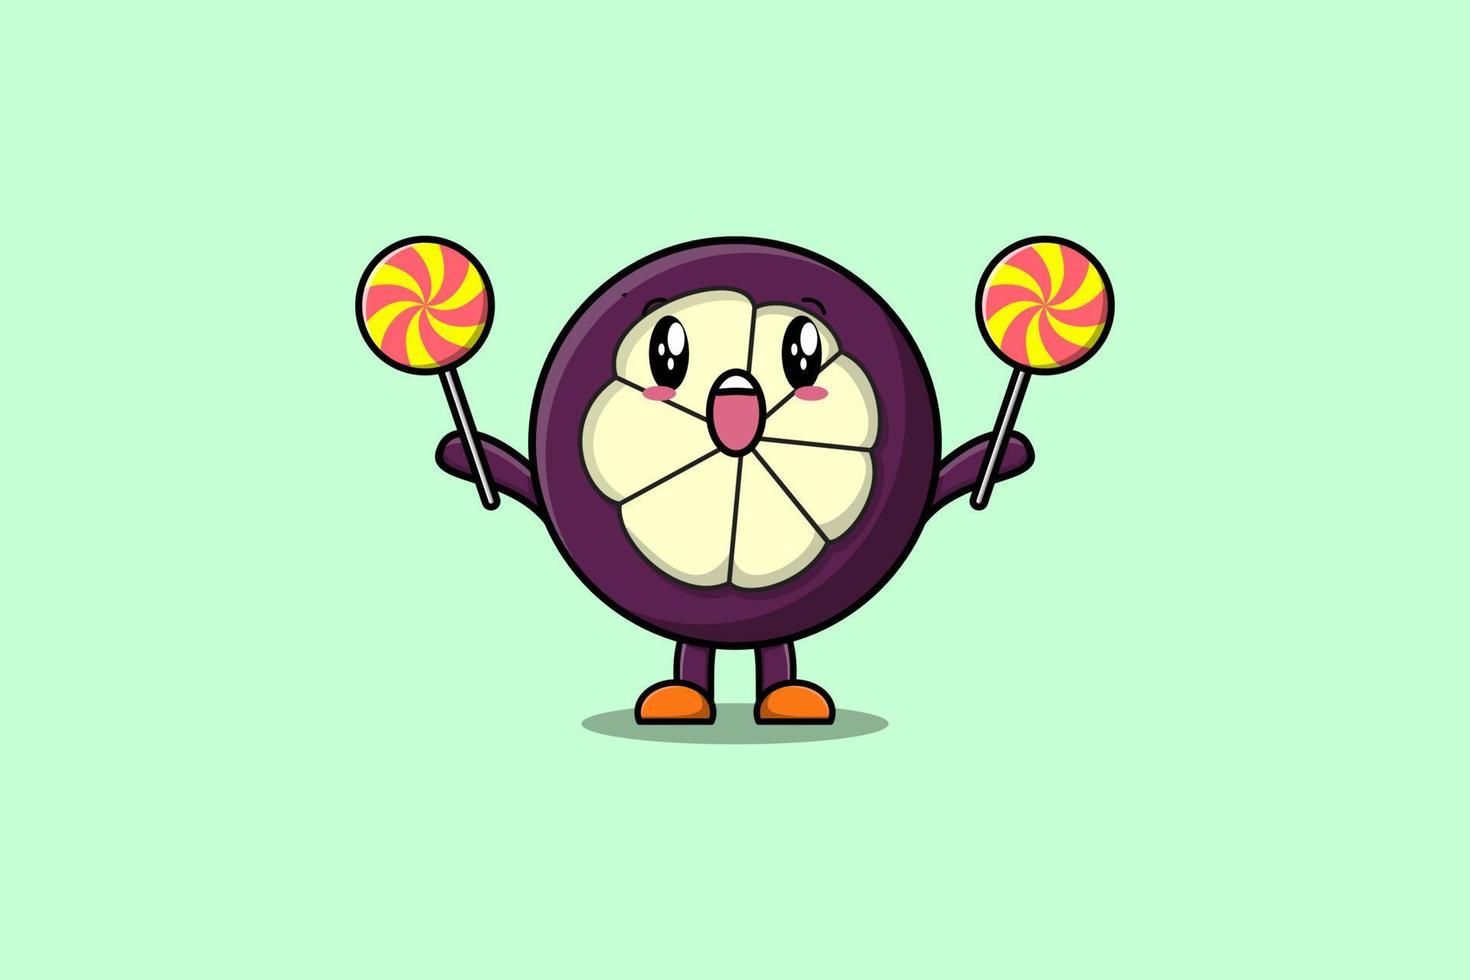 Cute cartoon Mangosteen character holding lollipop vector